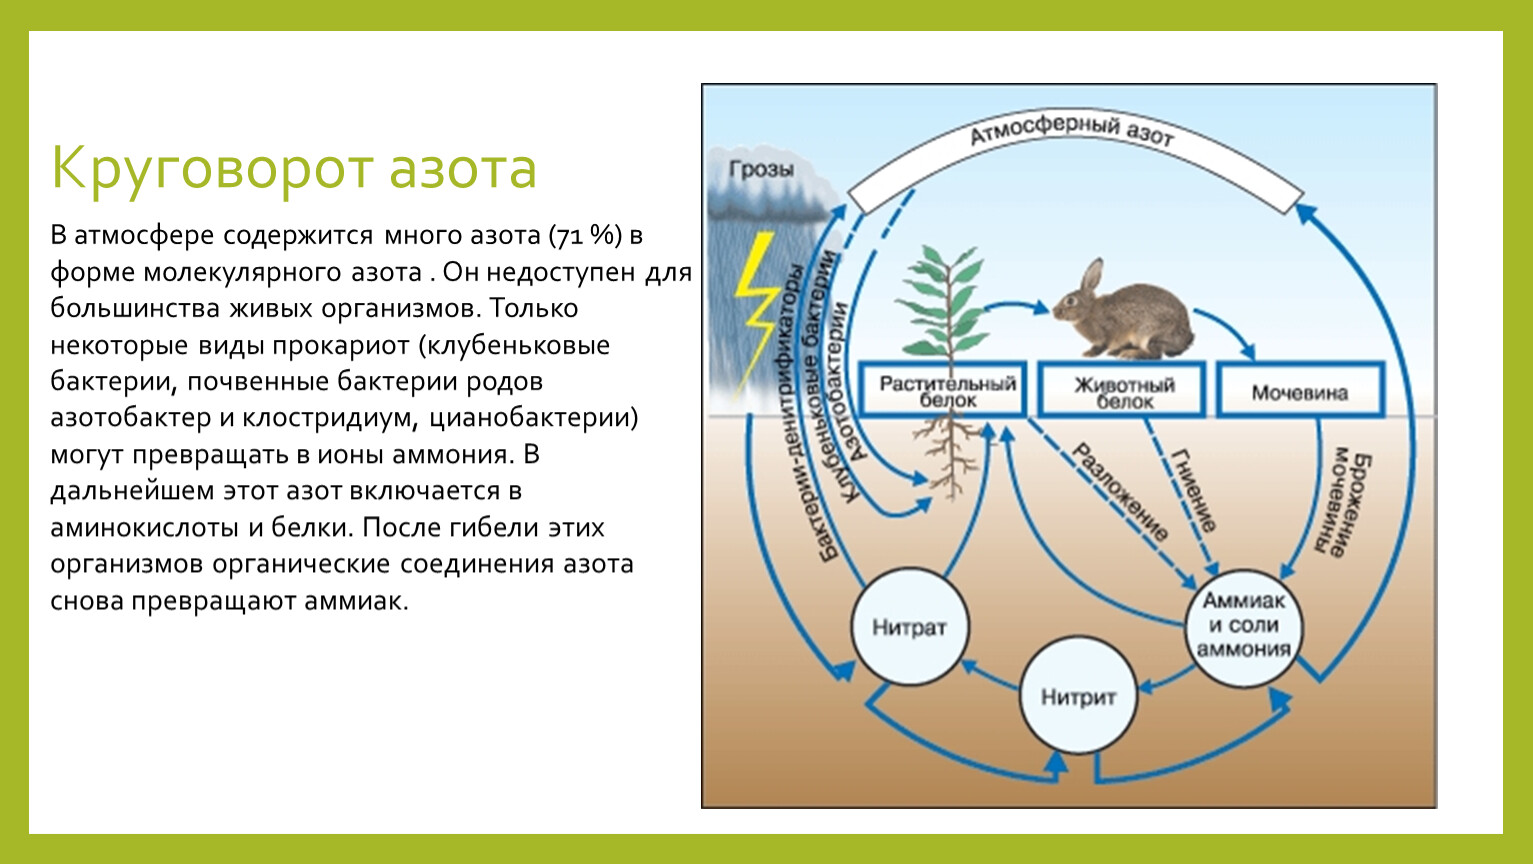 Круговорот веществ в биосфере схема. Схема биогеохимического круговорота в природе. Биологический цикл азота. Биогеохимический цикл азота схема. Круговорот азота в биосфере.